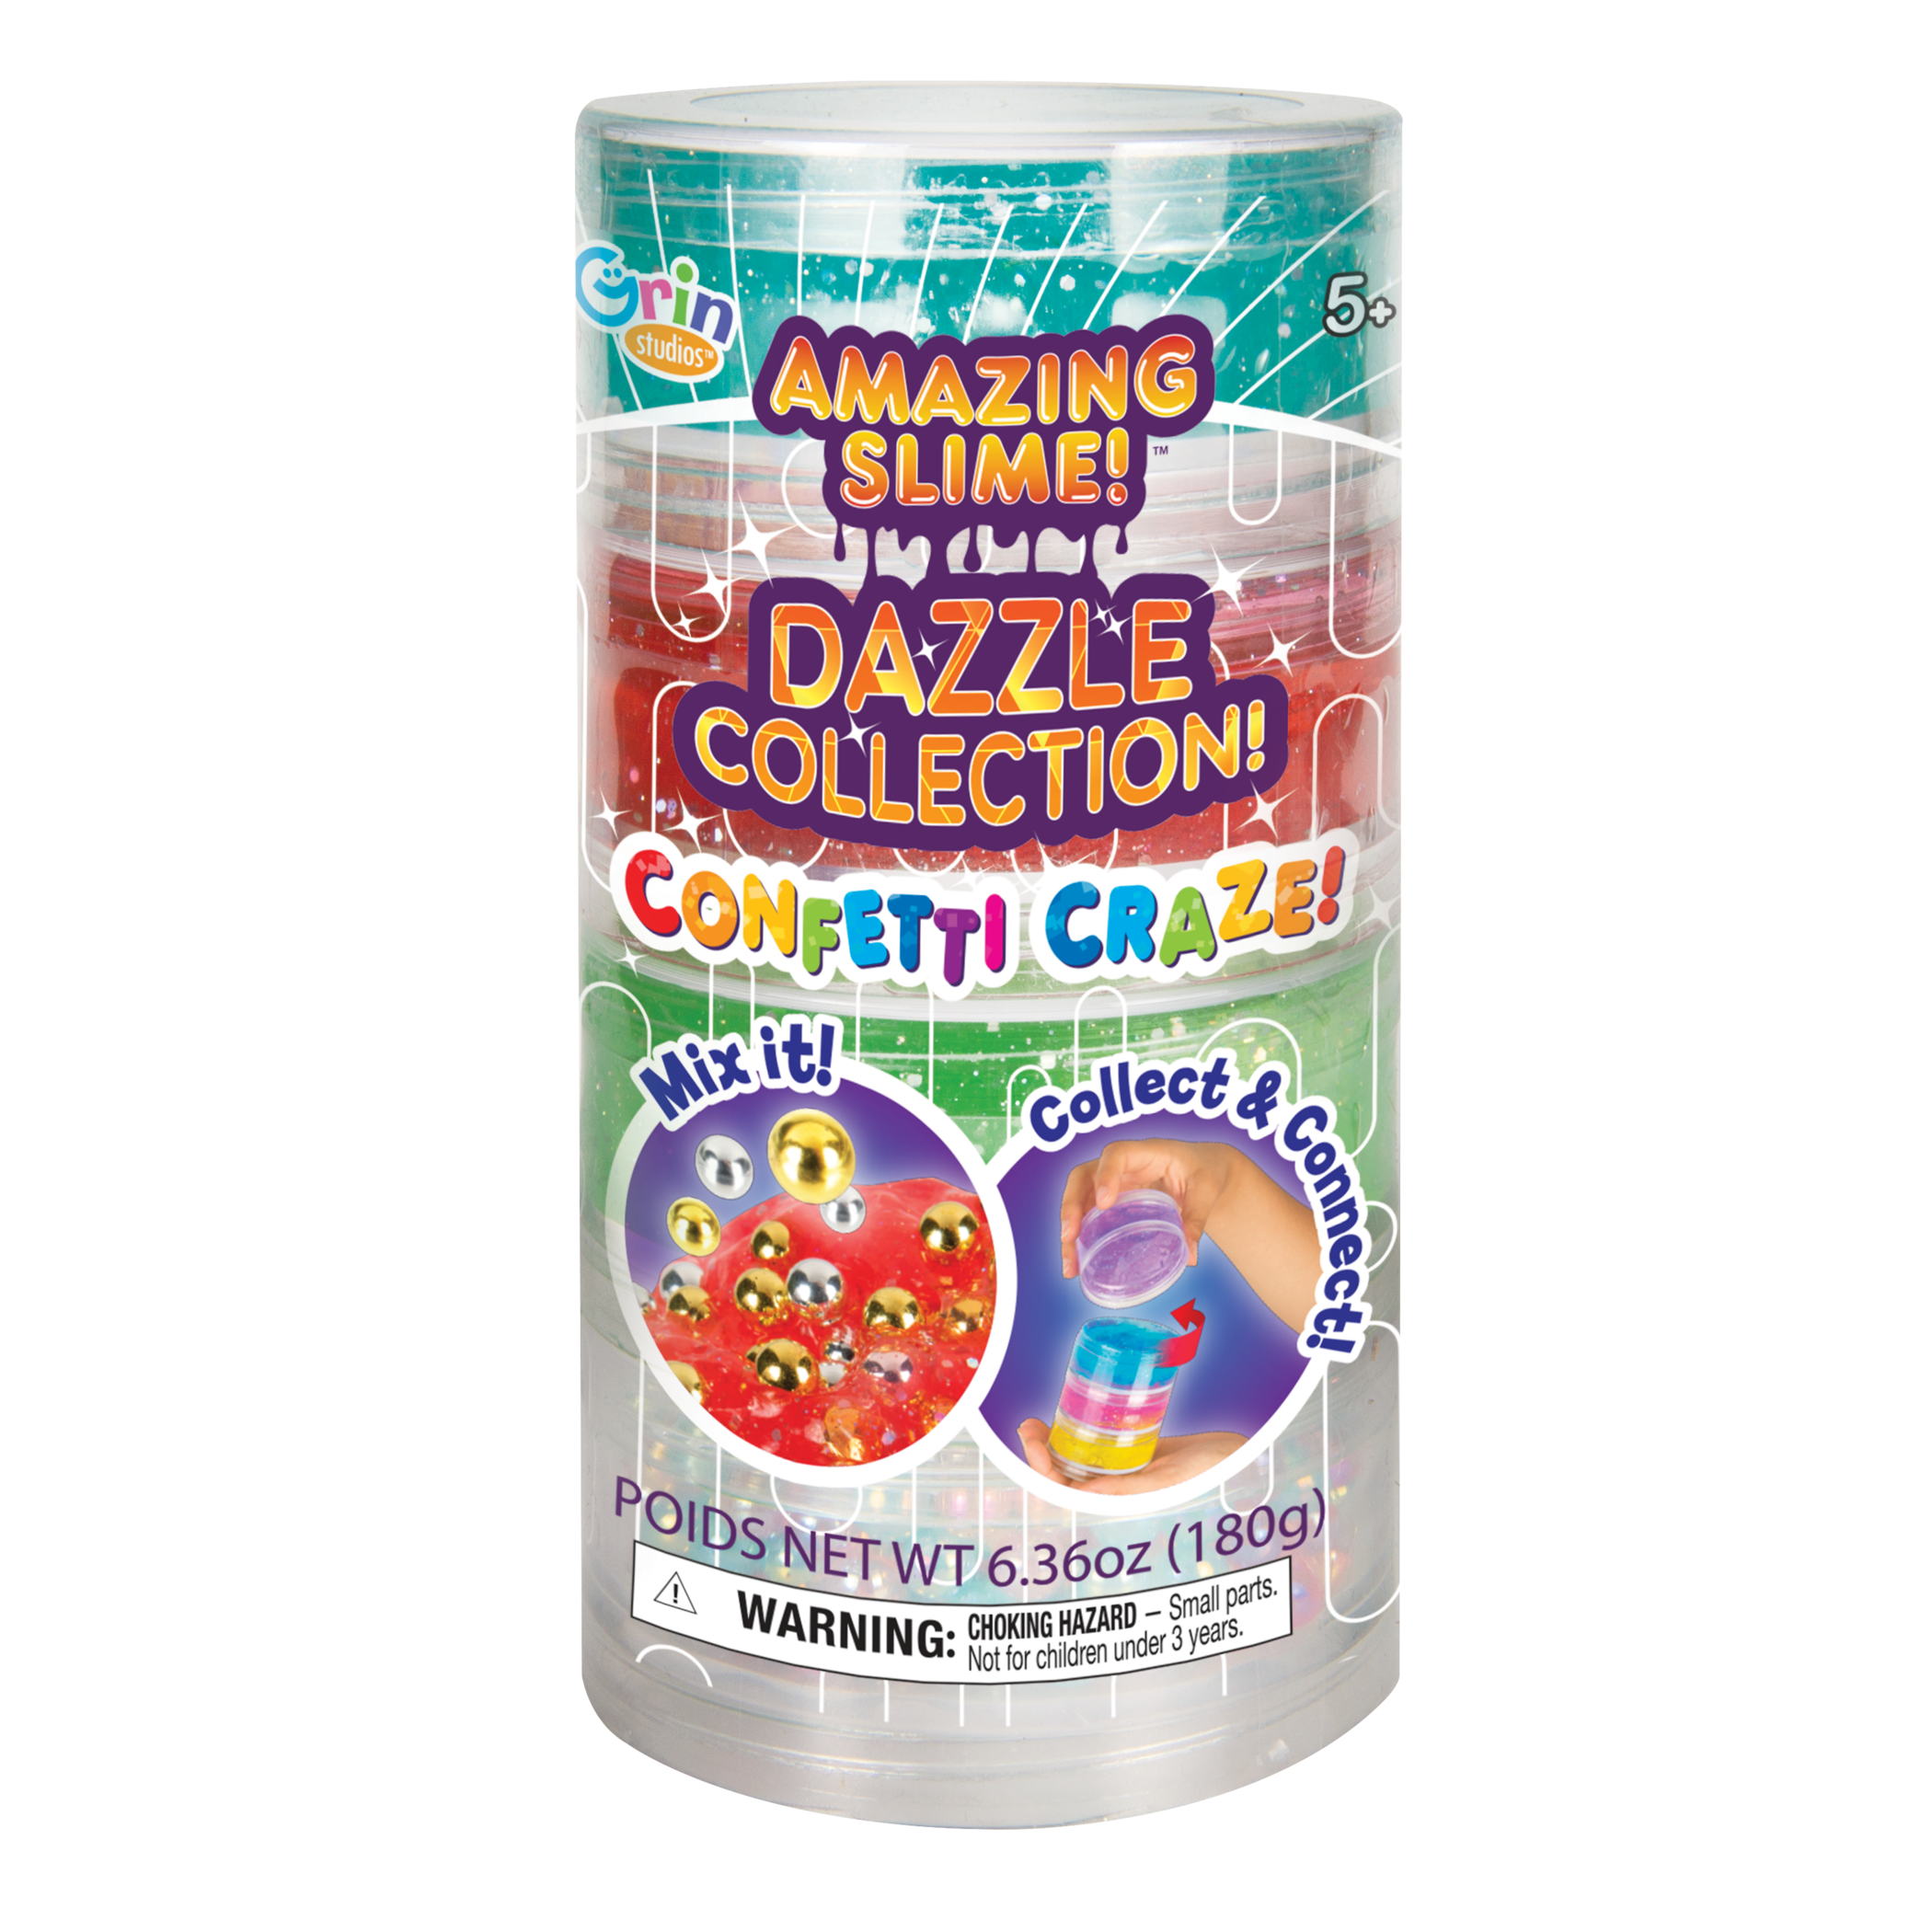 Razzle Dazzle Slime Neon Green Glitter, Cut Size - Fine Cut (1/64), 2 Oz